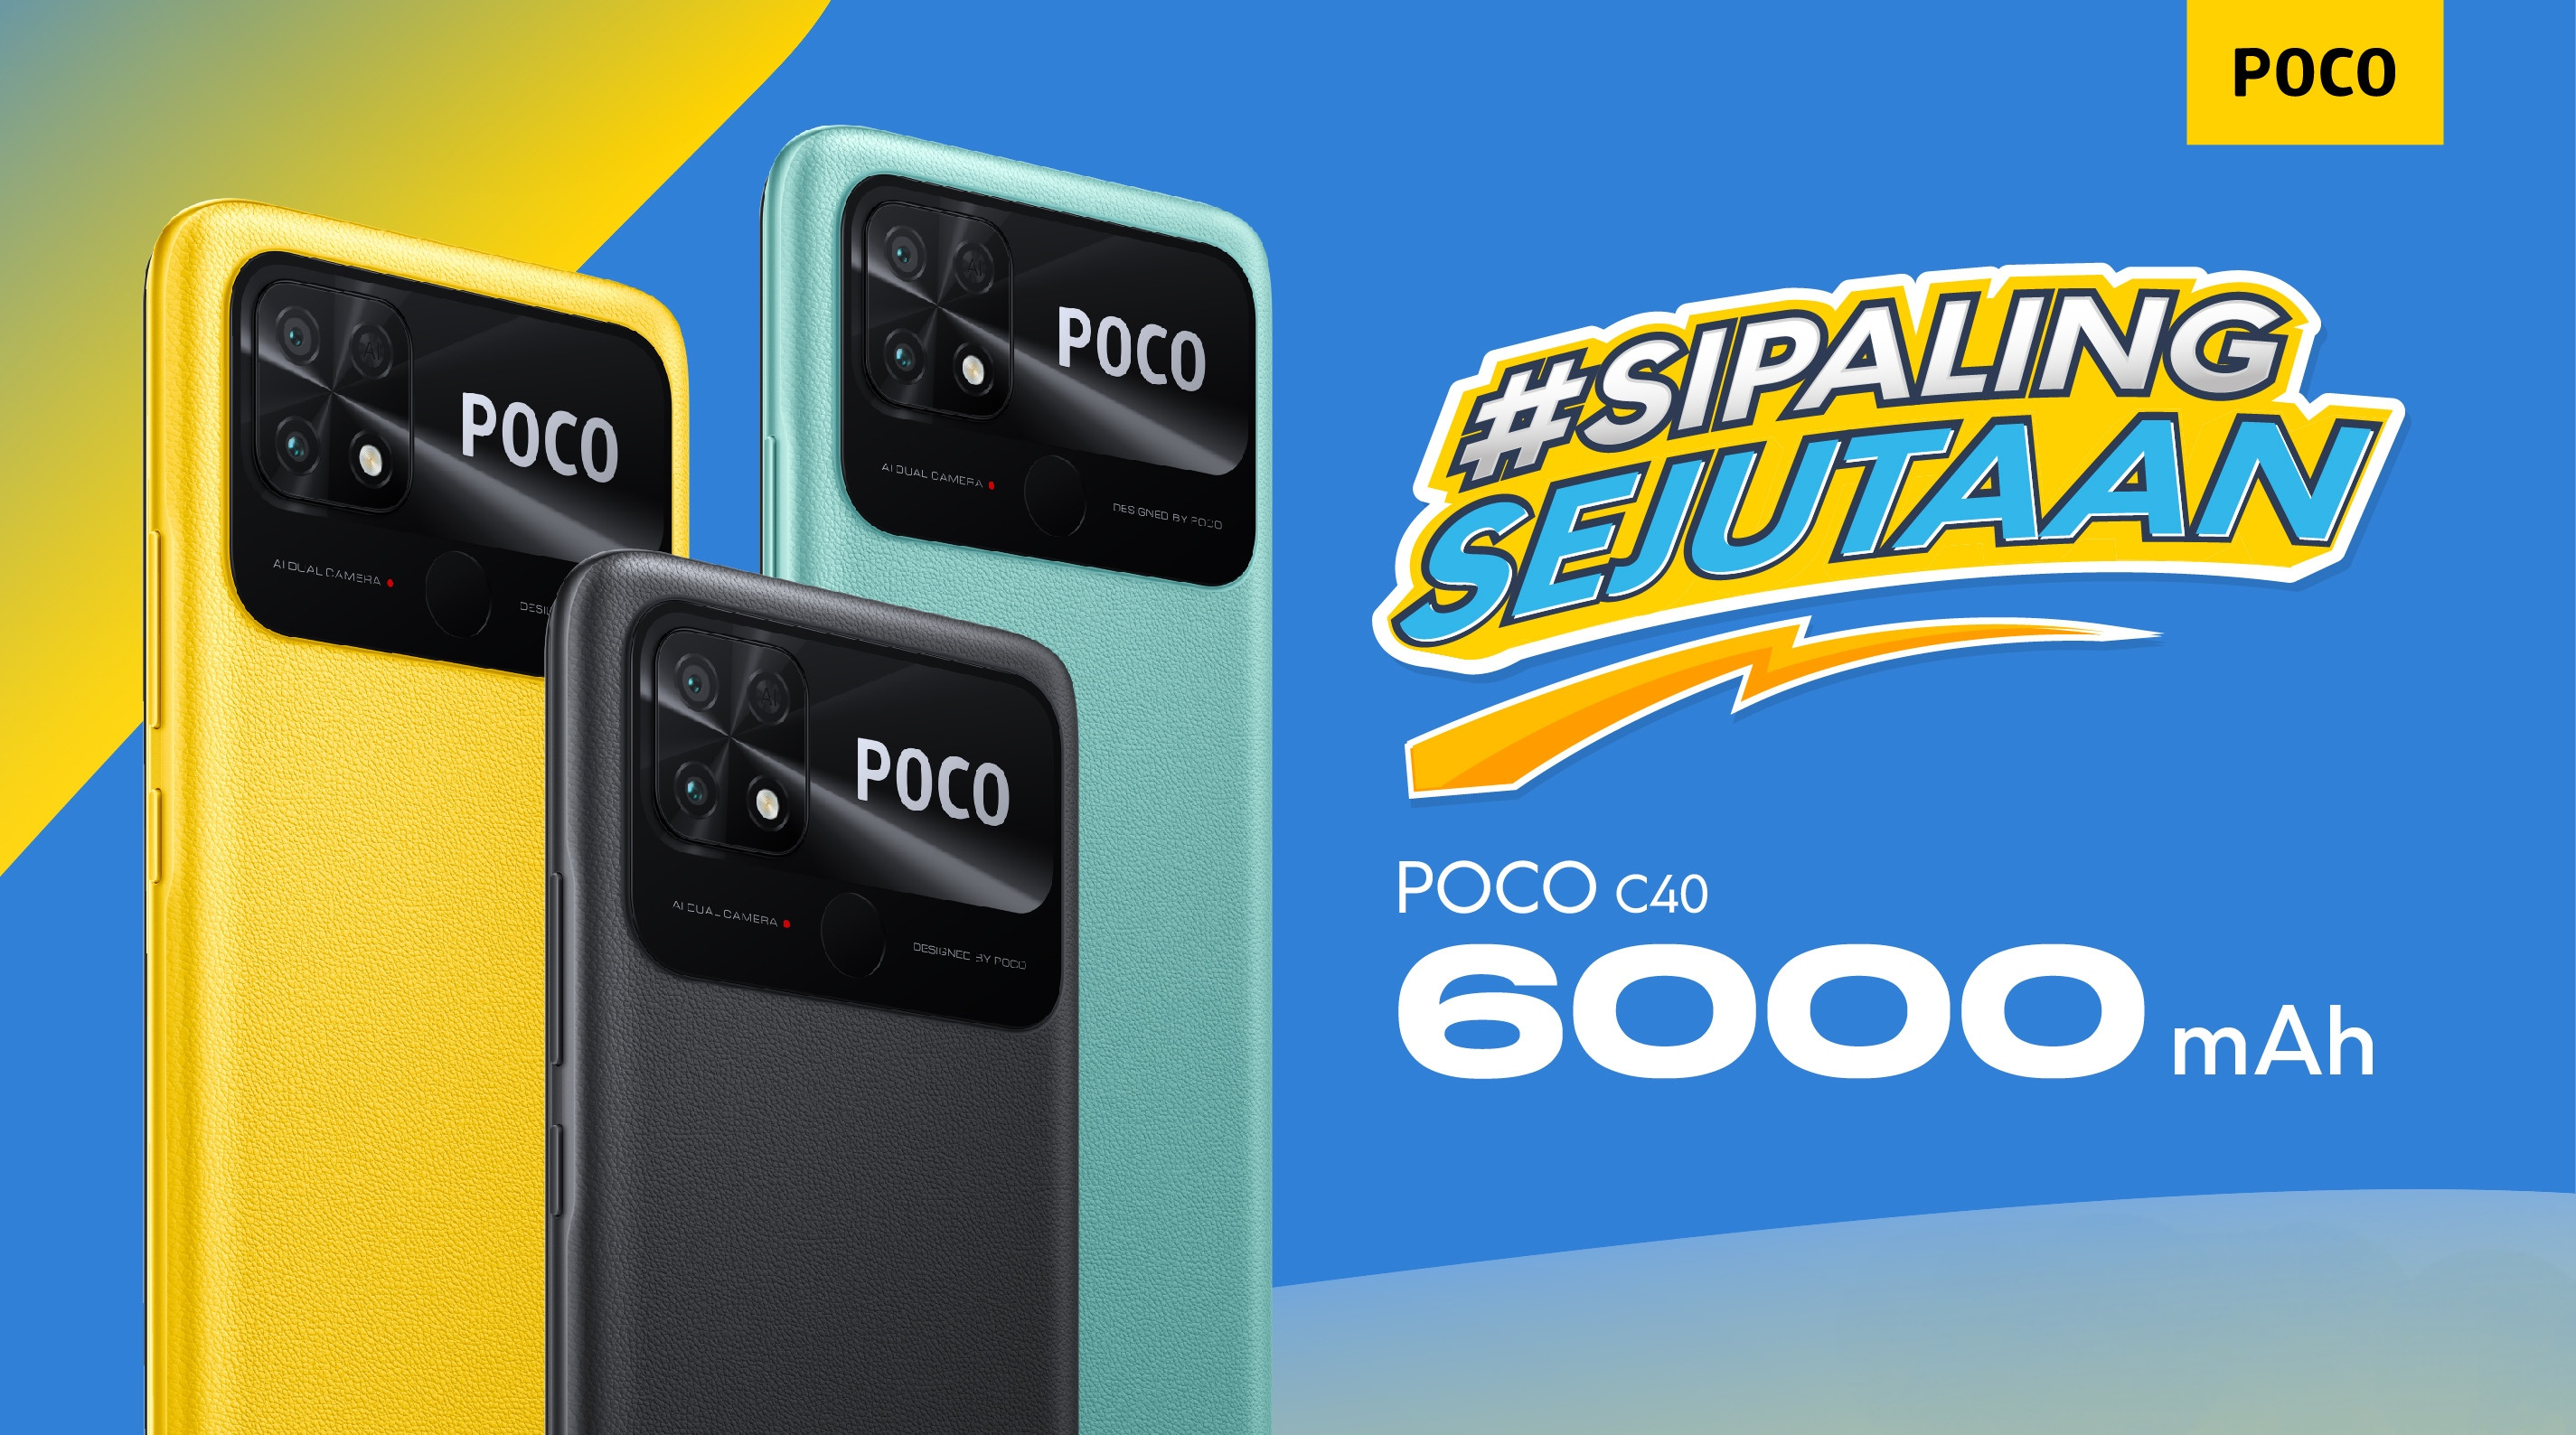 Harga Sejutaan! Poco C40 Resmi Diluncurkan Dengan Kapasitas Baterai 6000Mah